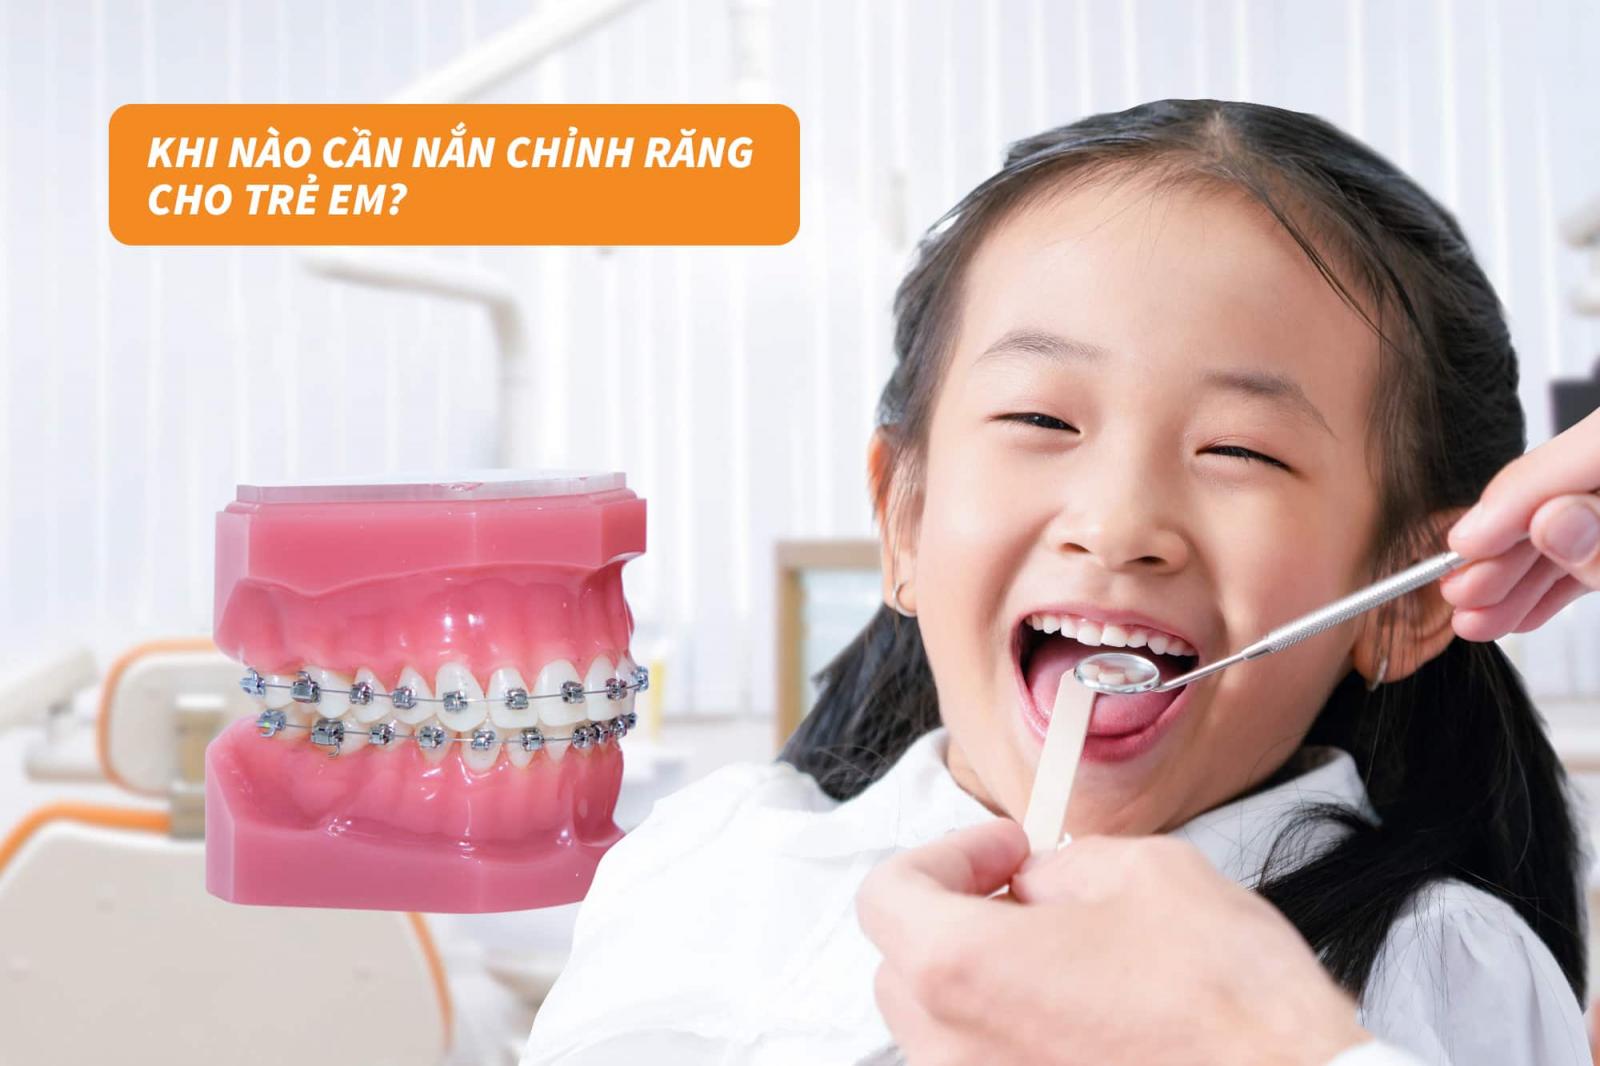 Khi nào cần nắn chỉnh răng cho trẻ em?